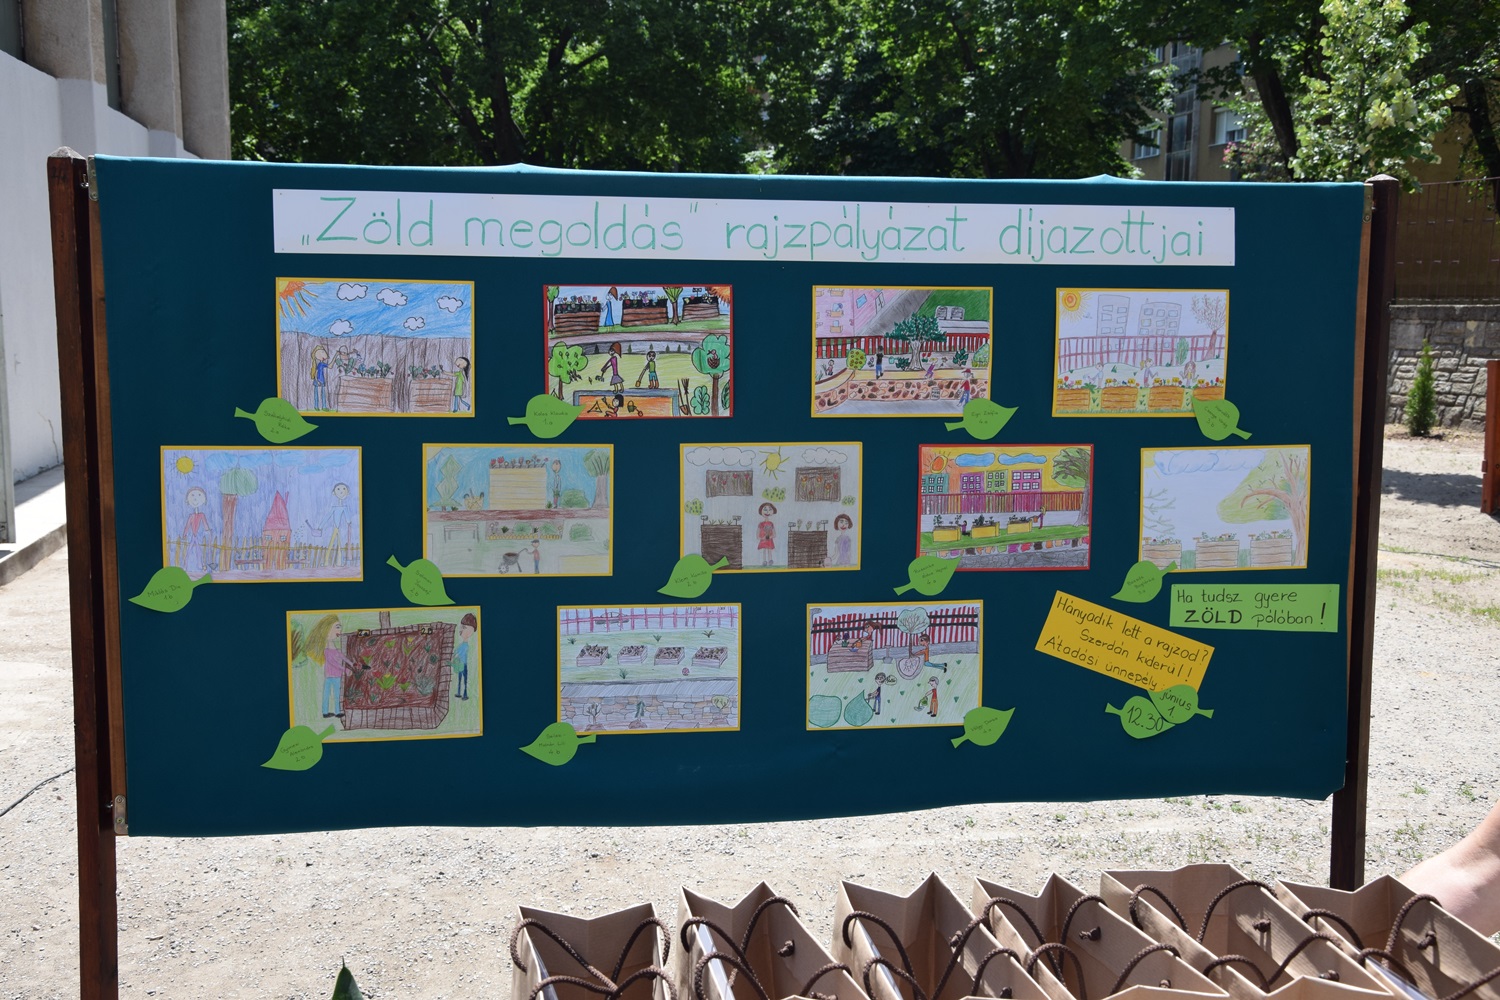 500 000 forintot nyert a Bánki Donát utcai Általános Iskola Gyermekeinkért Alapítványa, hogy az iskola udvarán megvalósíthassa a környezettudatos nevelést elősegítő zöld közösségi kertet. A beruházás során elkészült mini kerteket a gyerekek fogják gondozni, zöldséget, gyógy- és fűszernövényeket, valamint virágokat nevelnek közösen, korcsoportonkénti munkamegosztással.